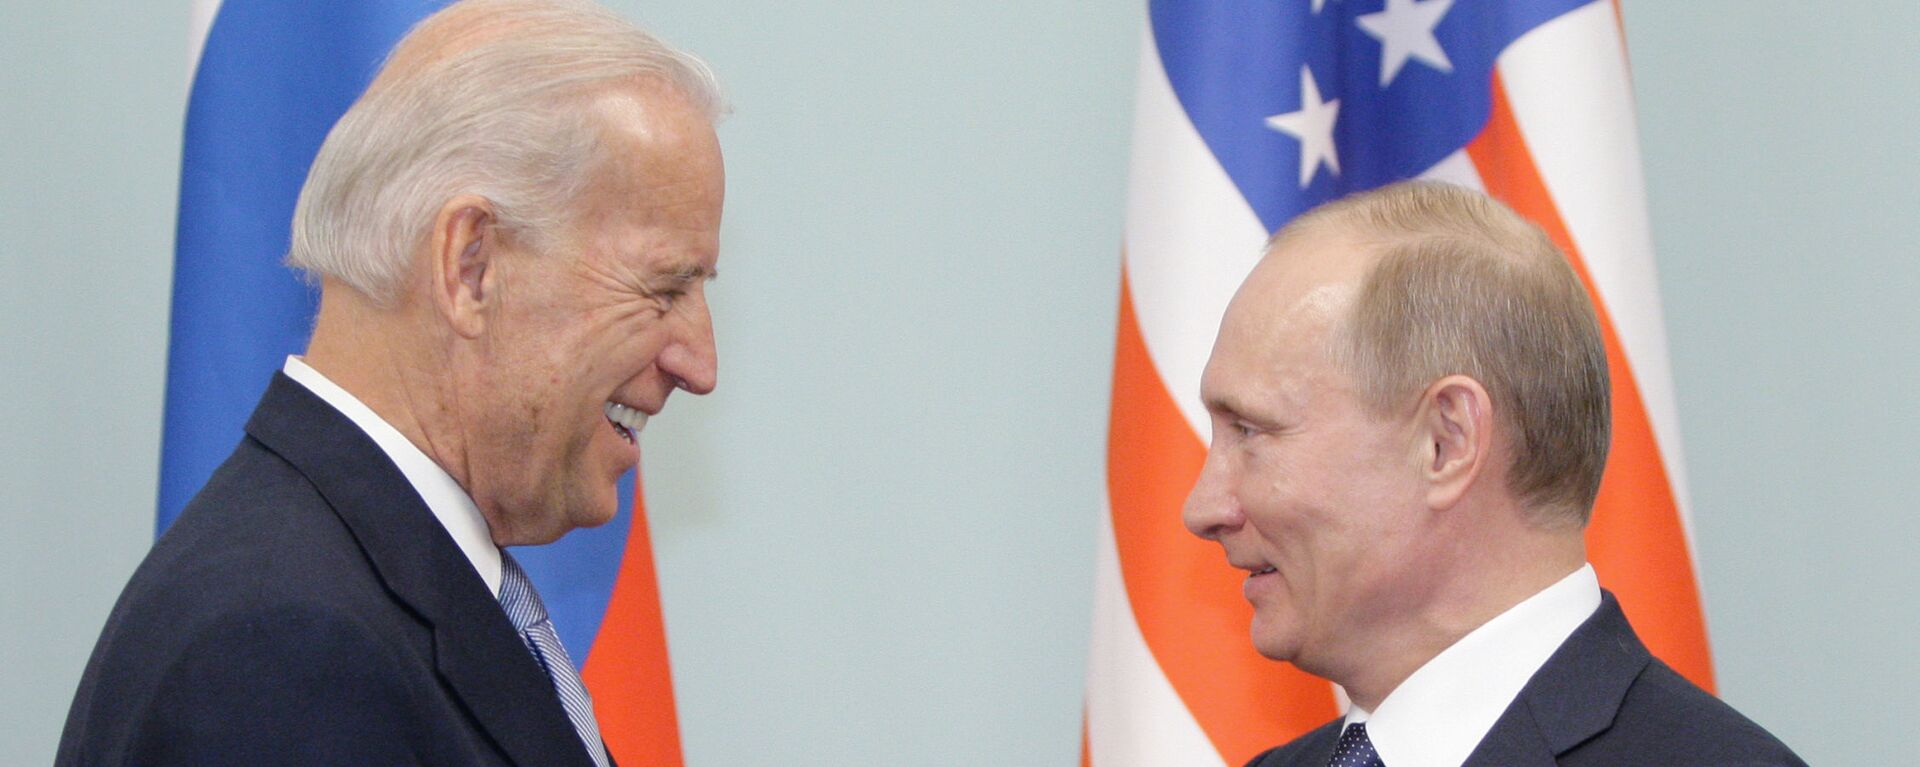 Встреча Владимира Путина с Джозефом Байденом в Москве, 2011 - Sputnik Latvija, 1920, 27.05.2021